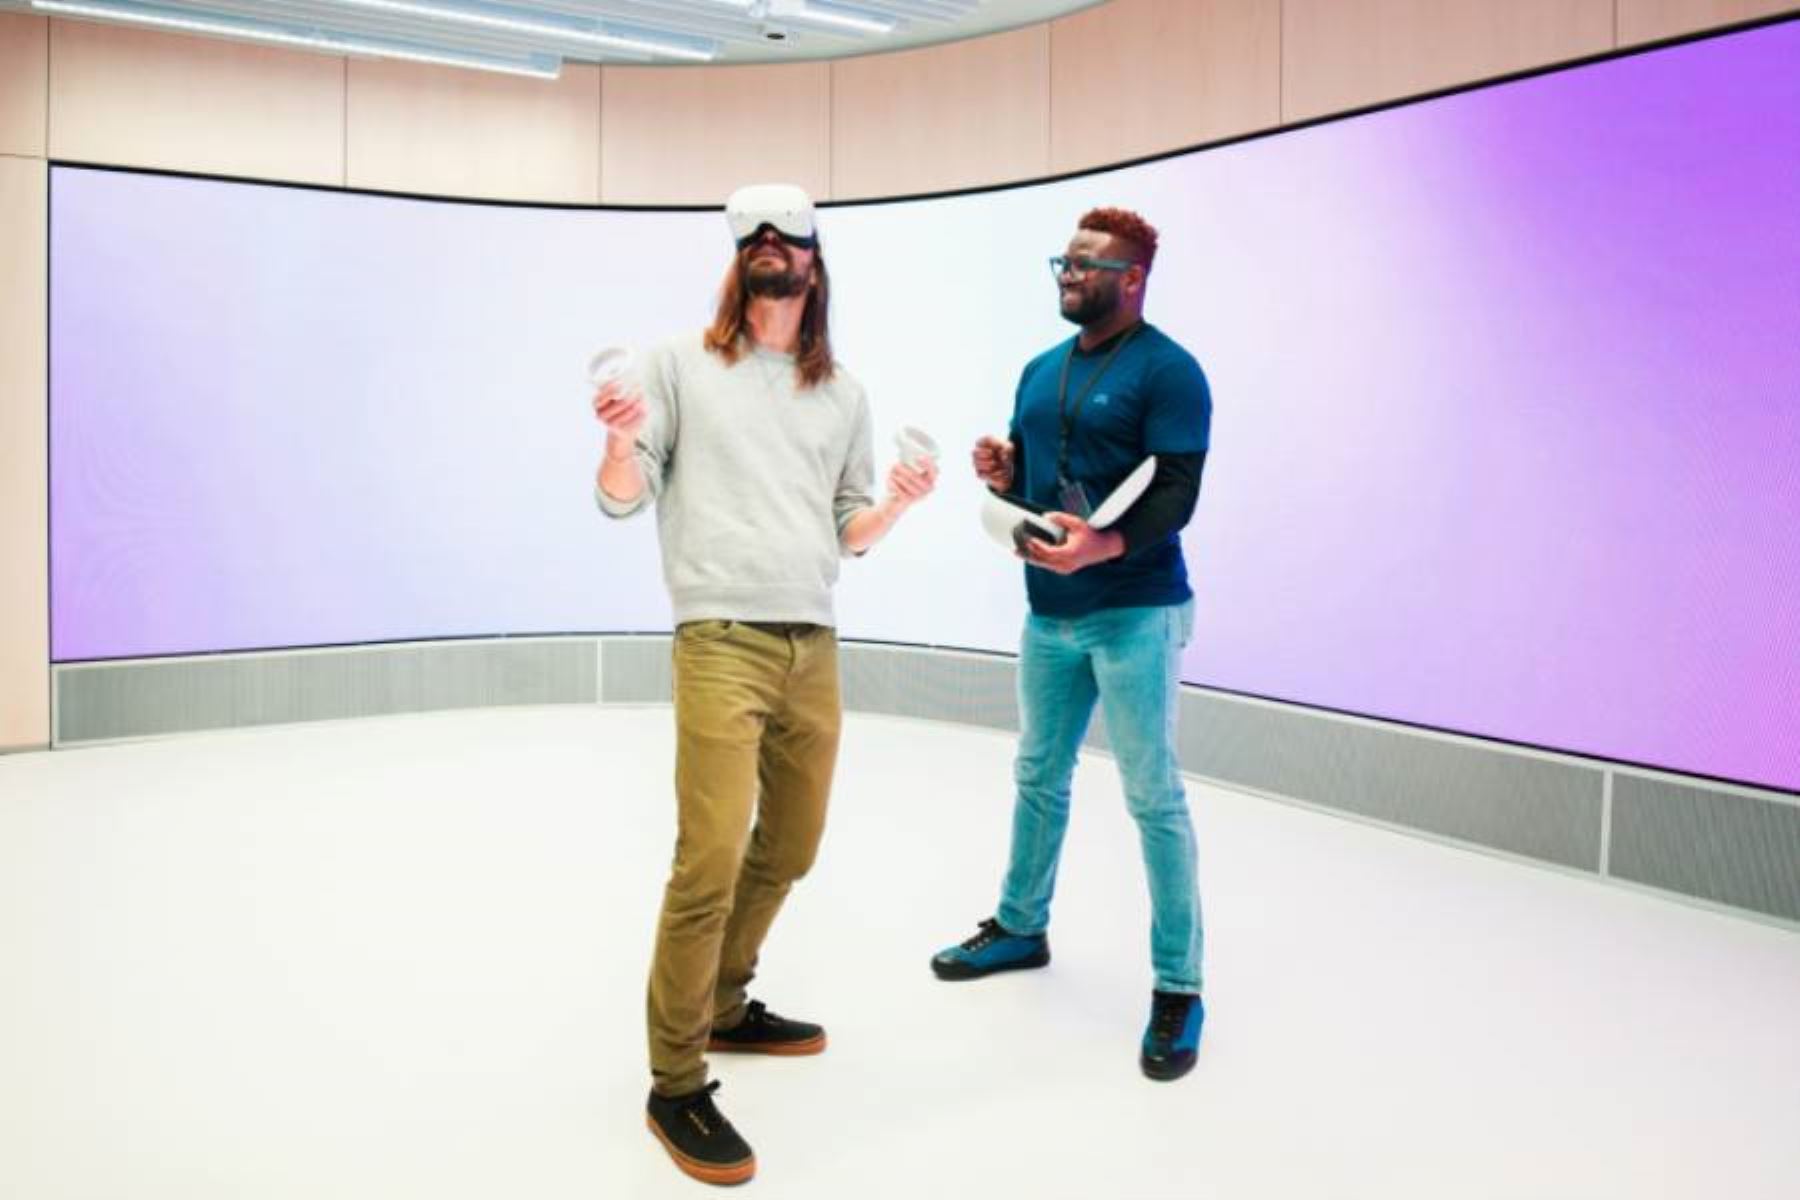 Meta abrió su primera tienda física donde muestra productos de realidad virtual